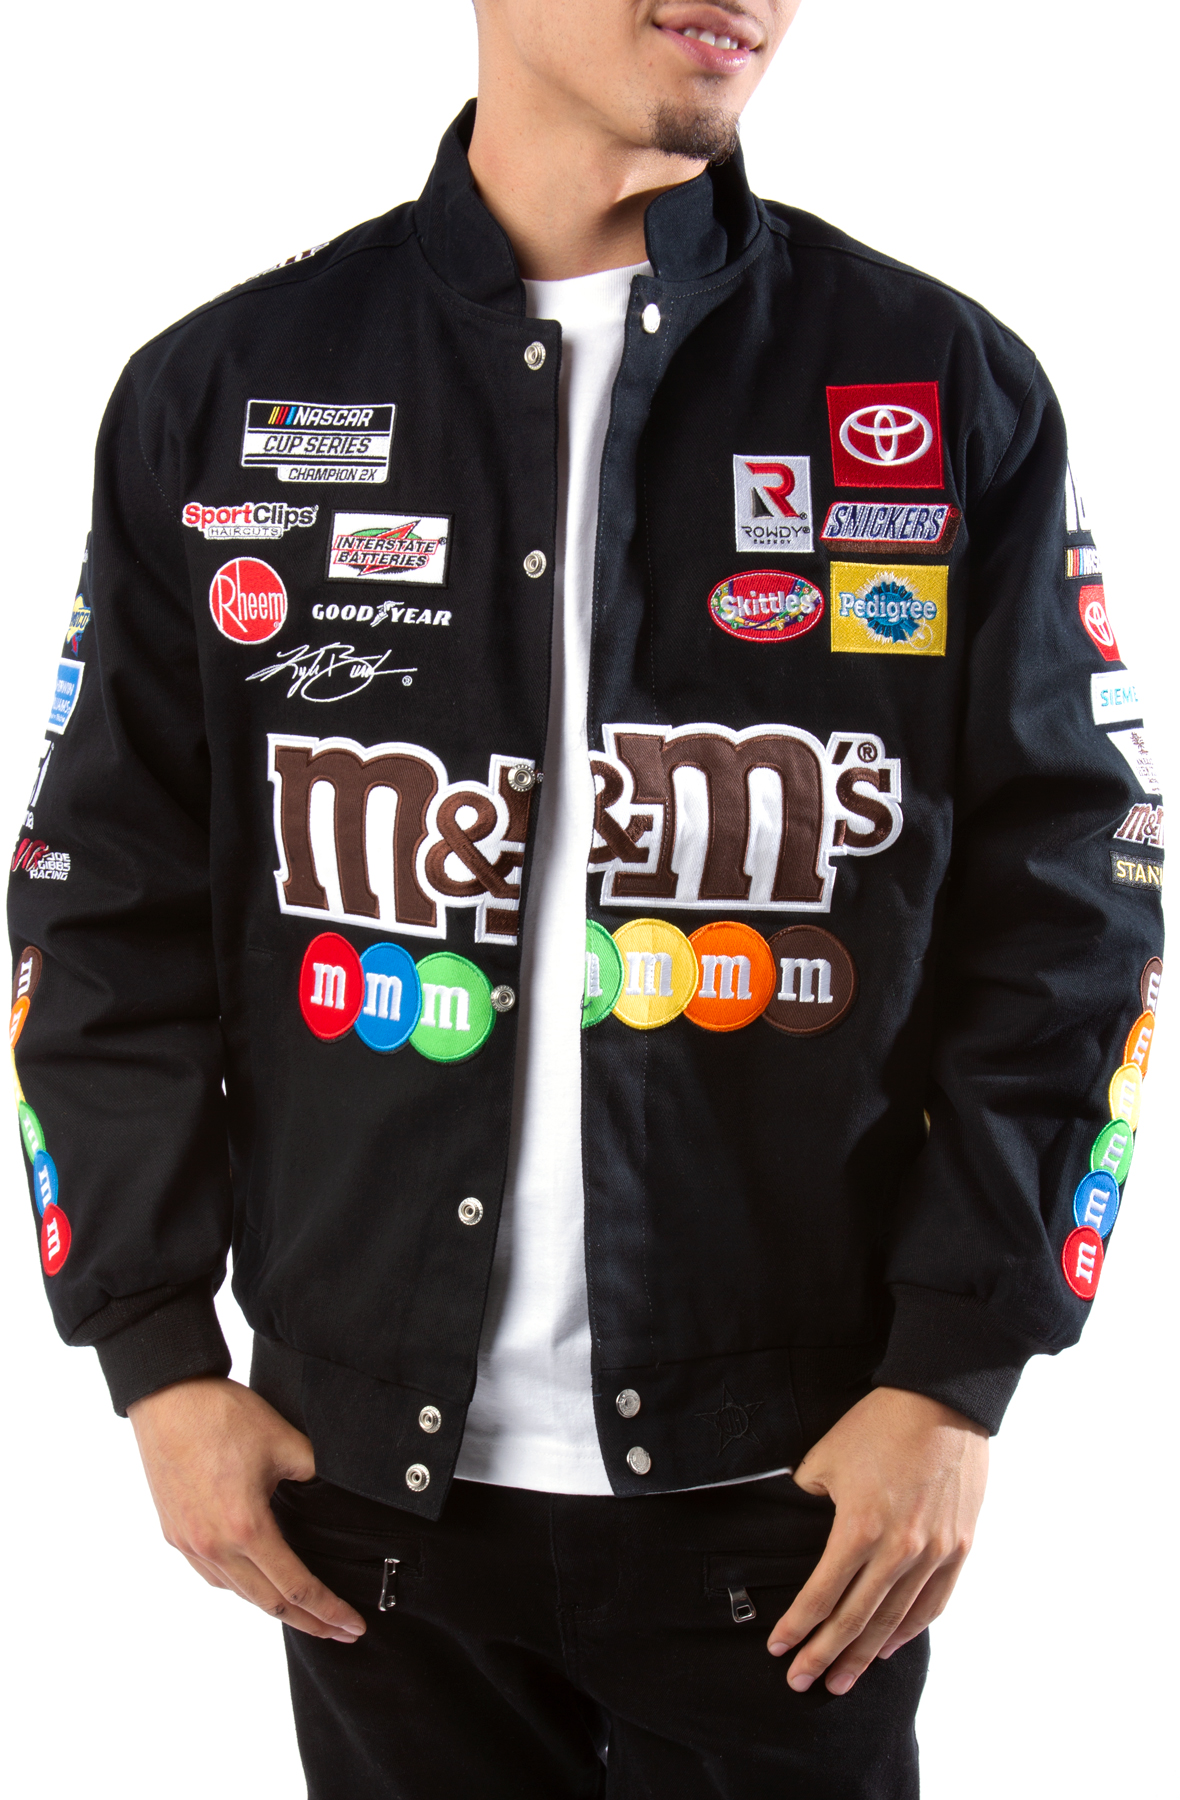 M&m jacket